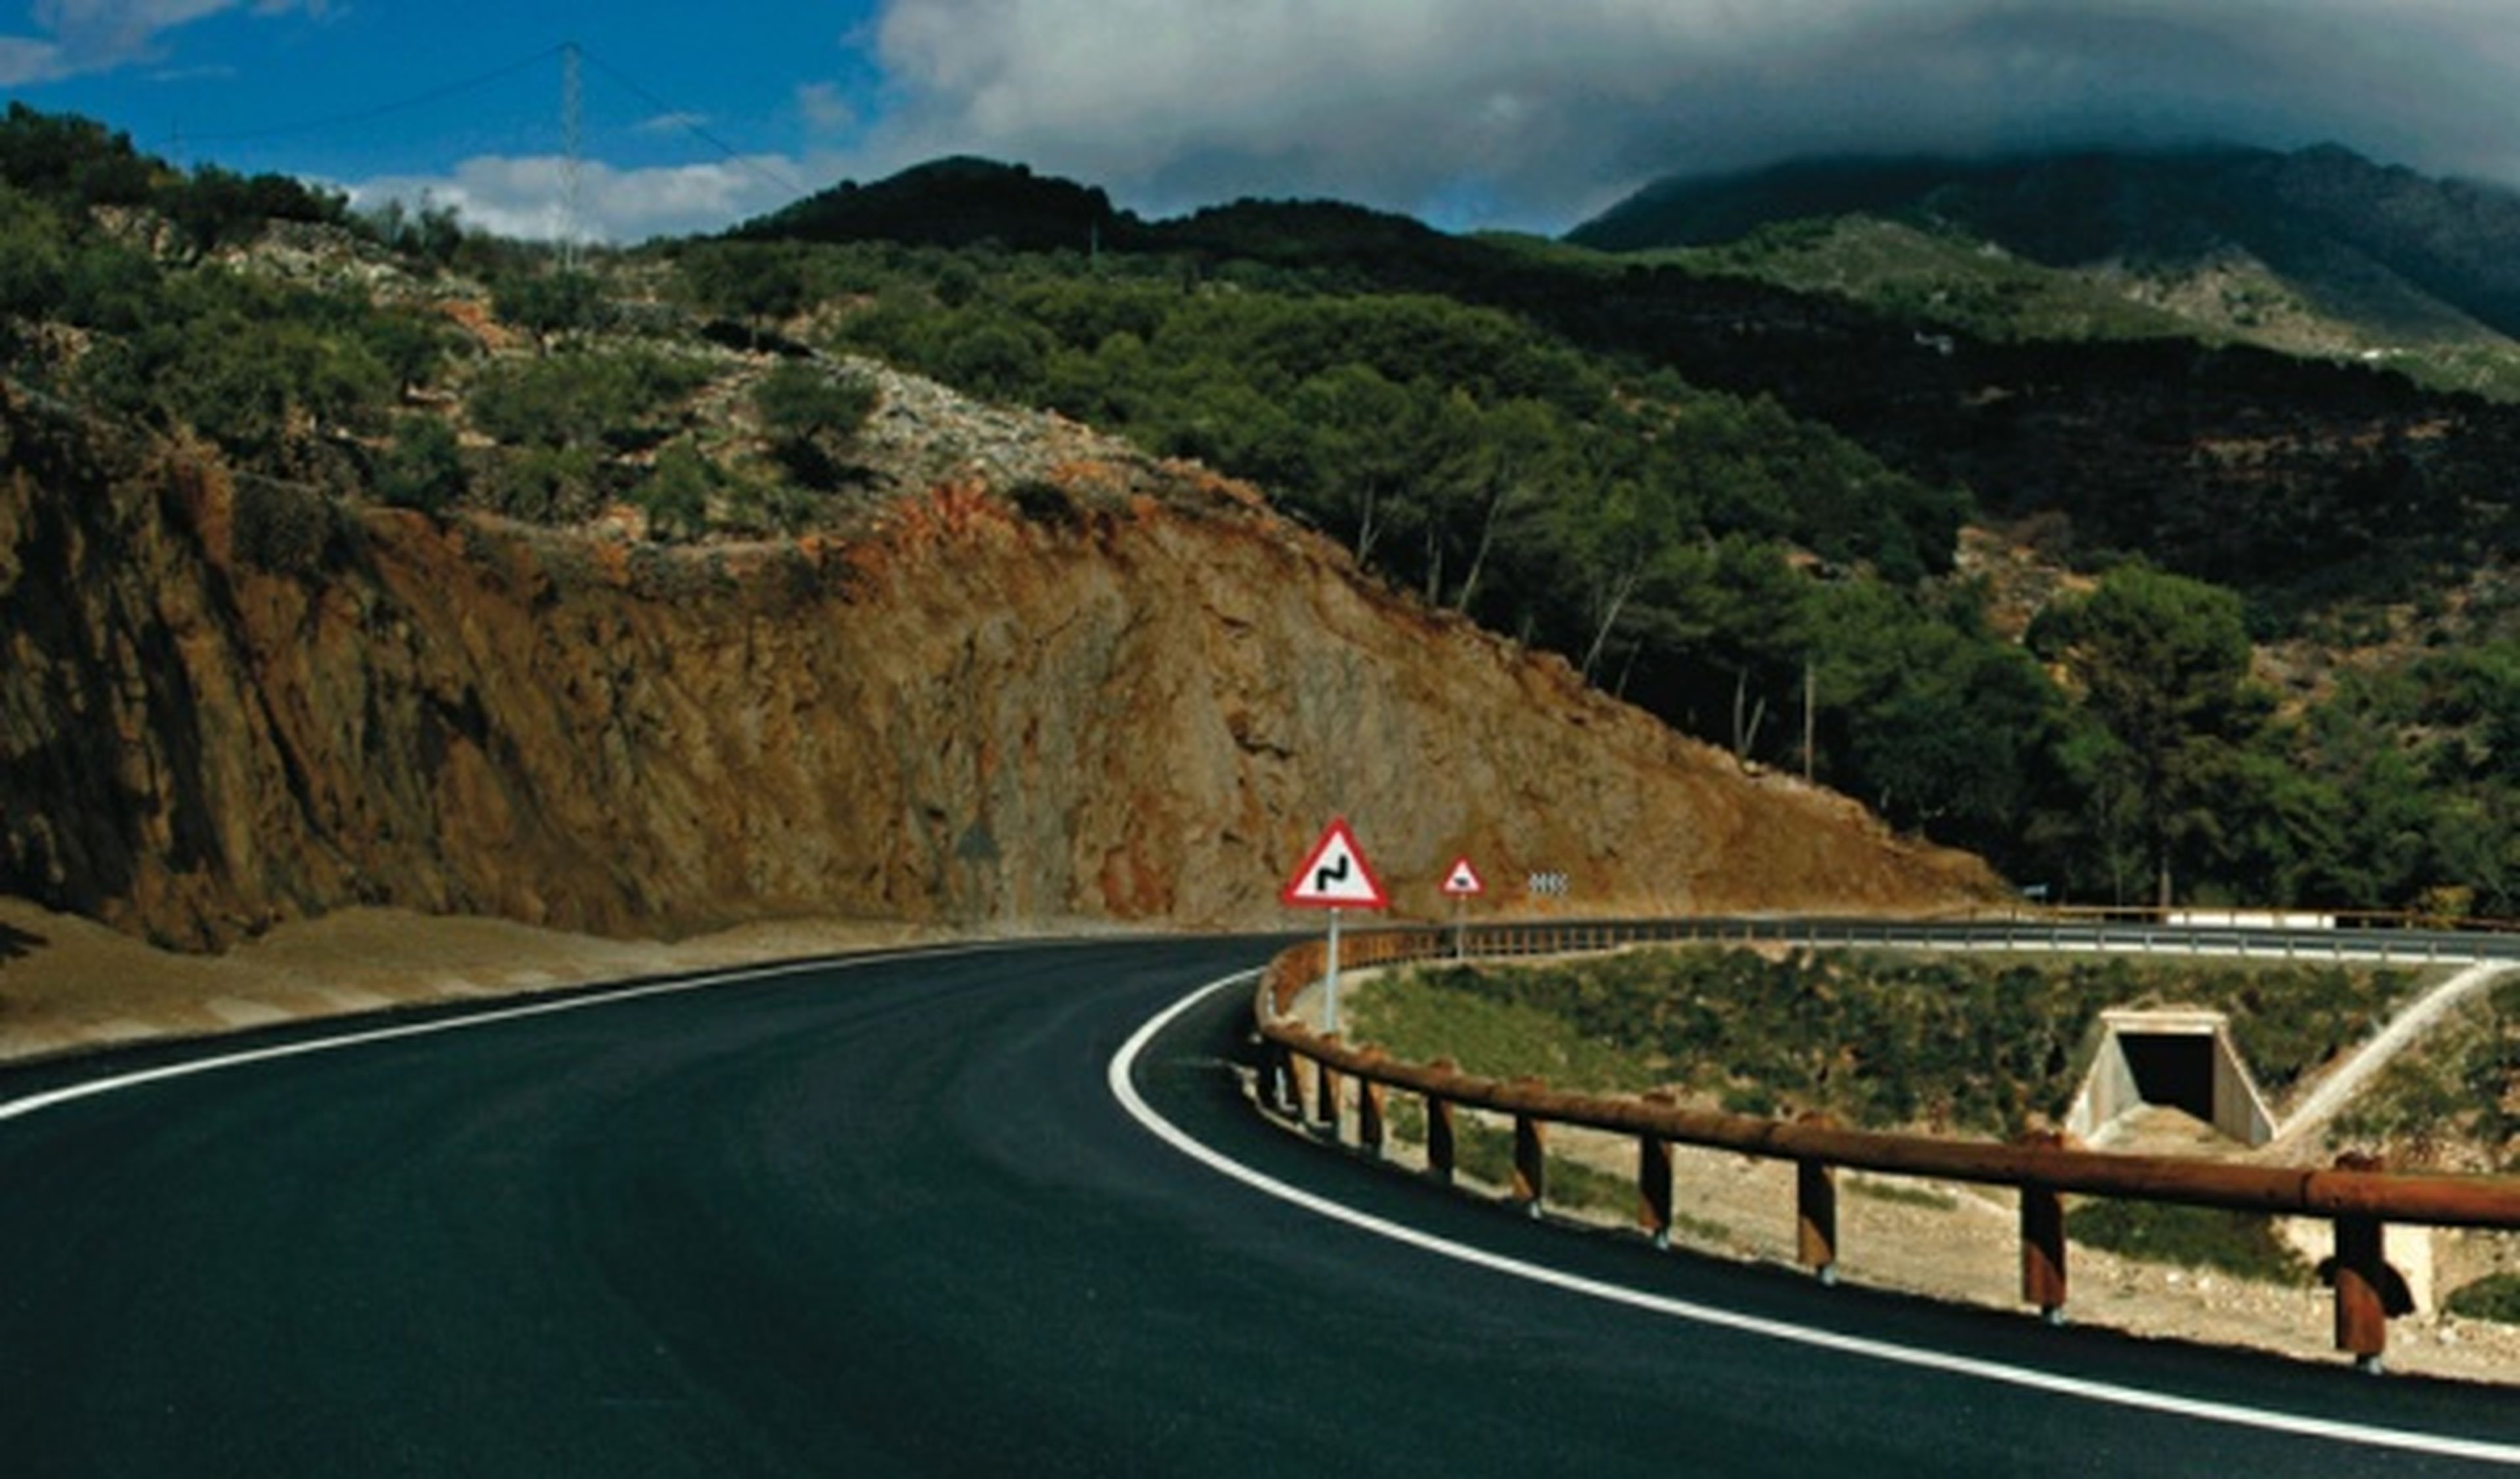 La DGT propone el límite a 90 km/h en toda carretera convencional